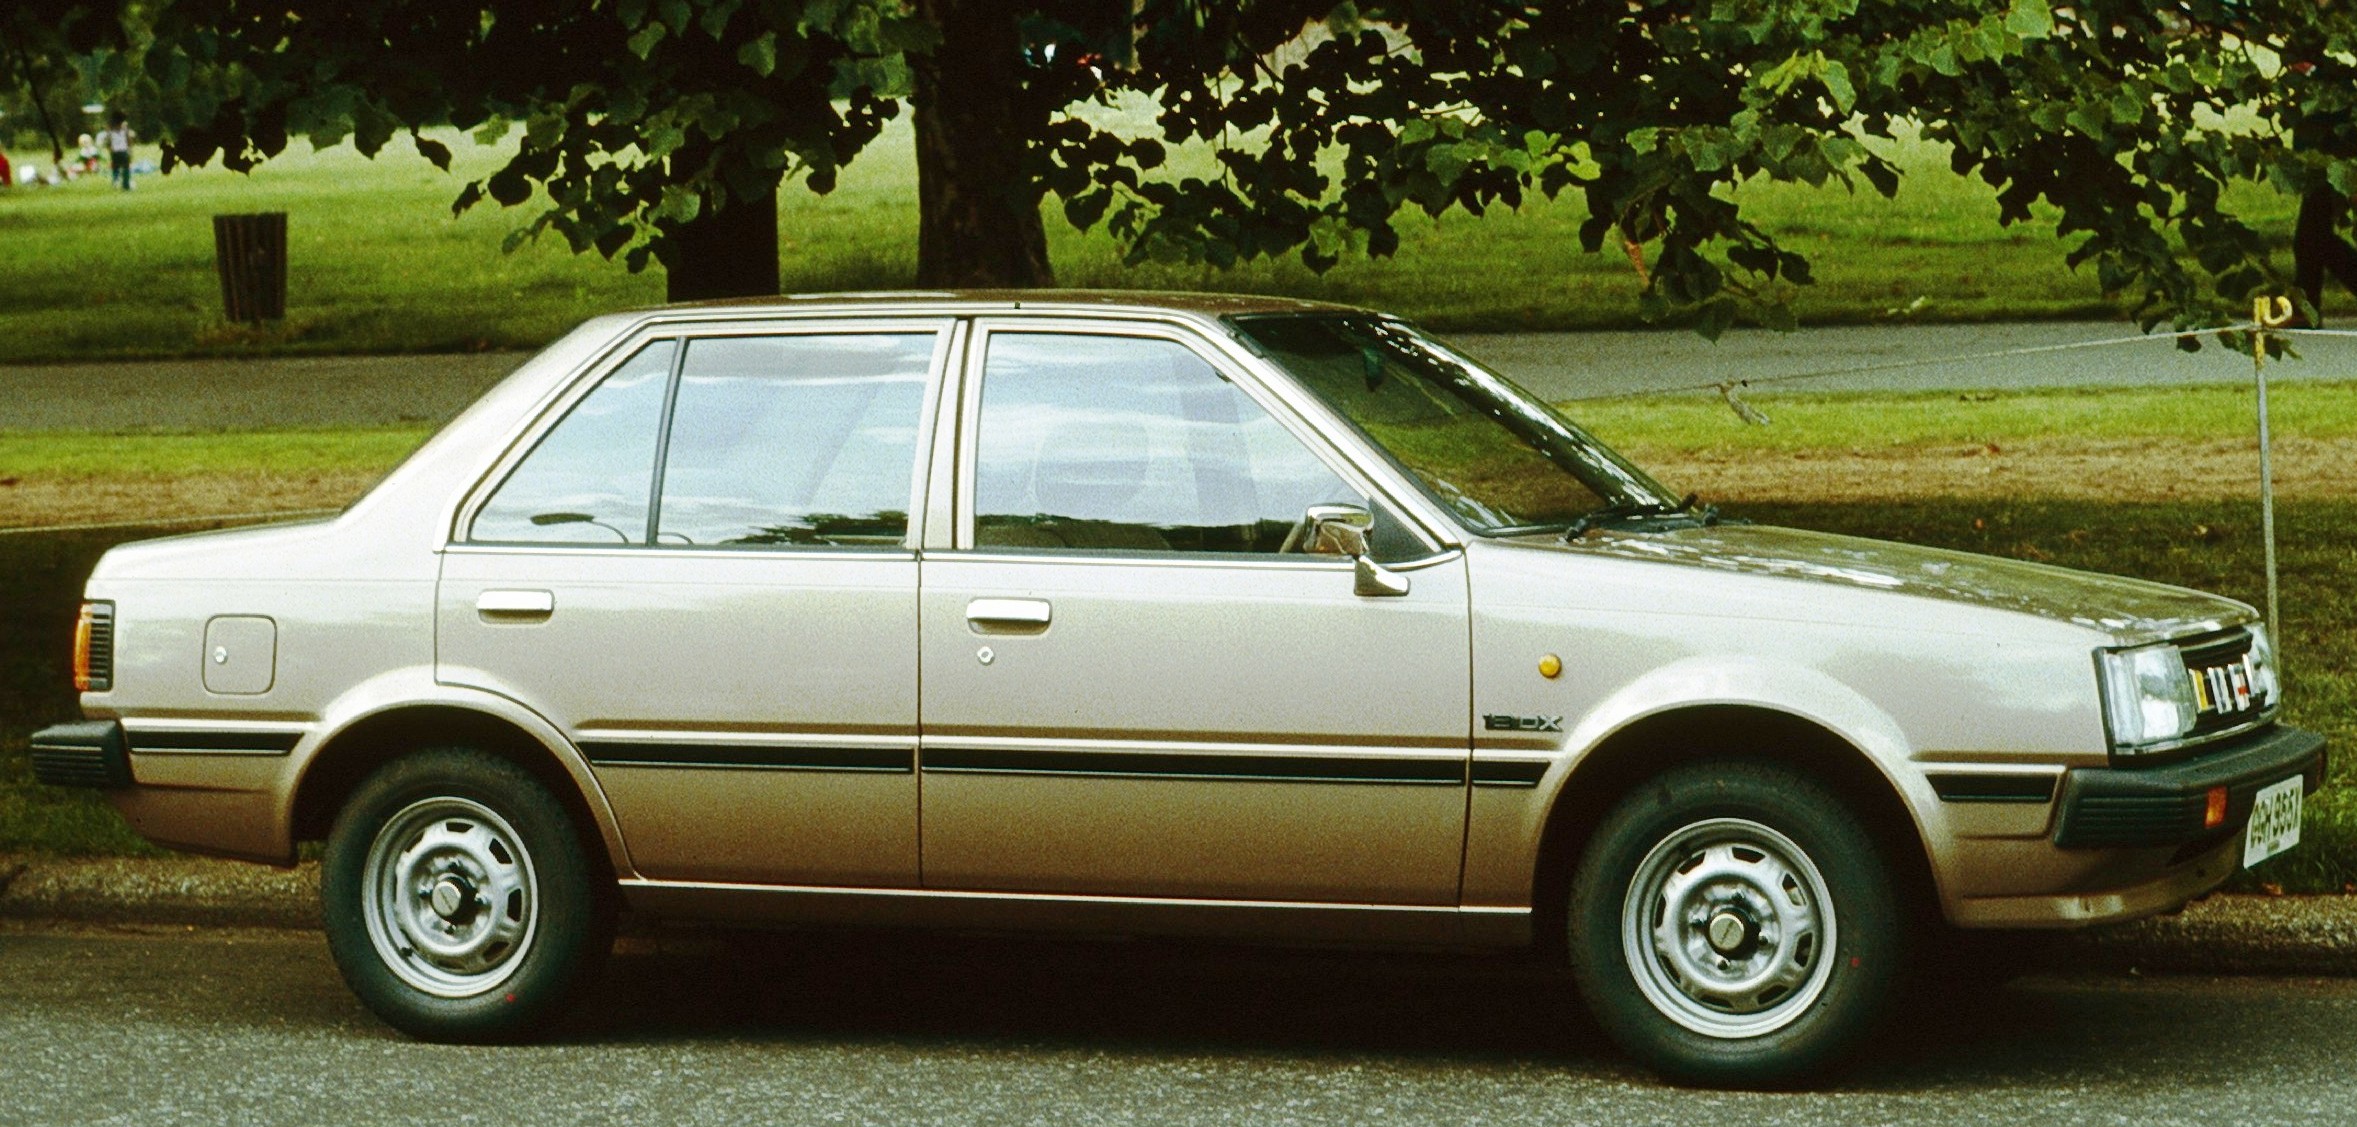 Nissan datsun sunny 1982 #9